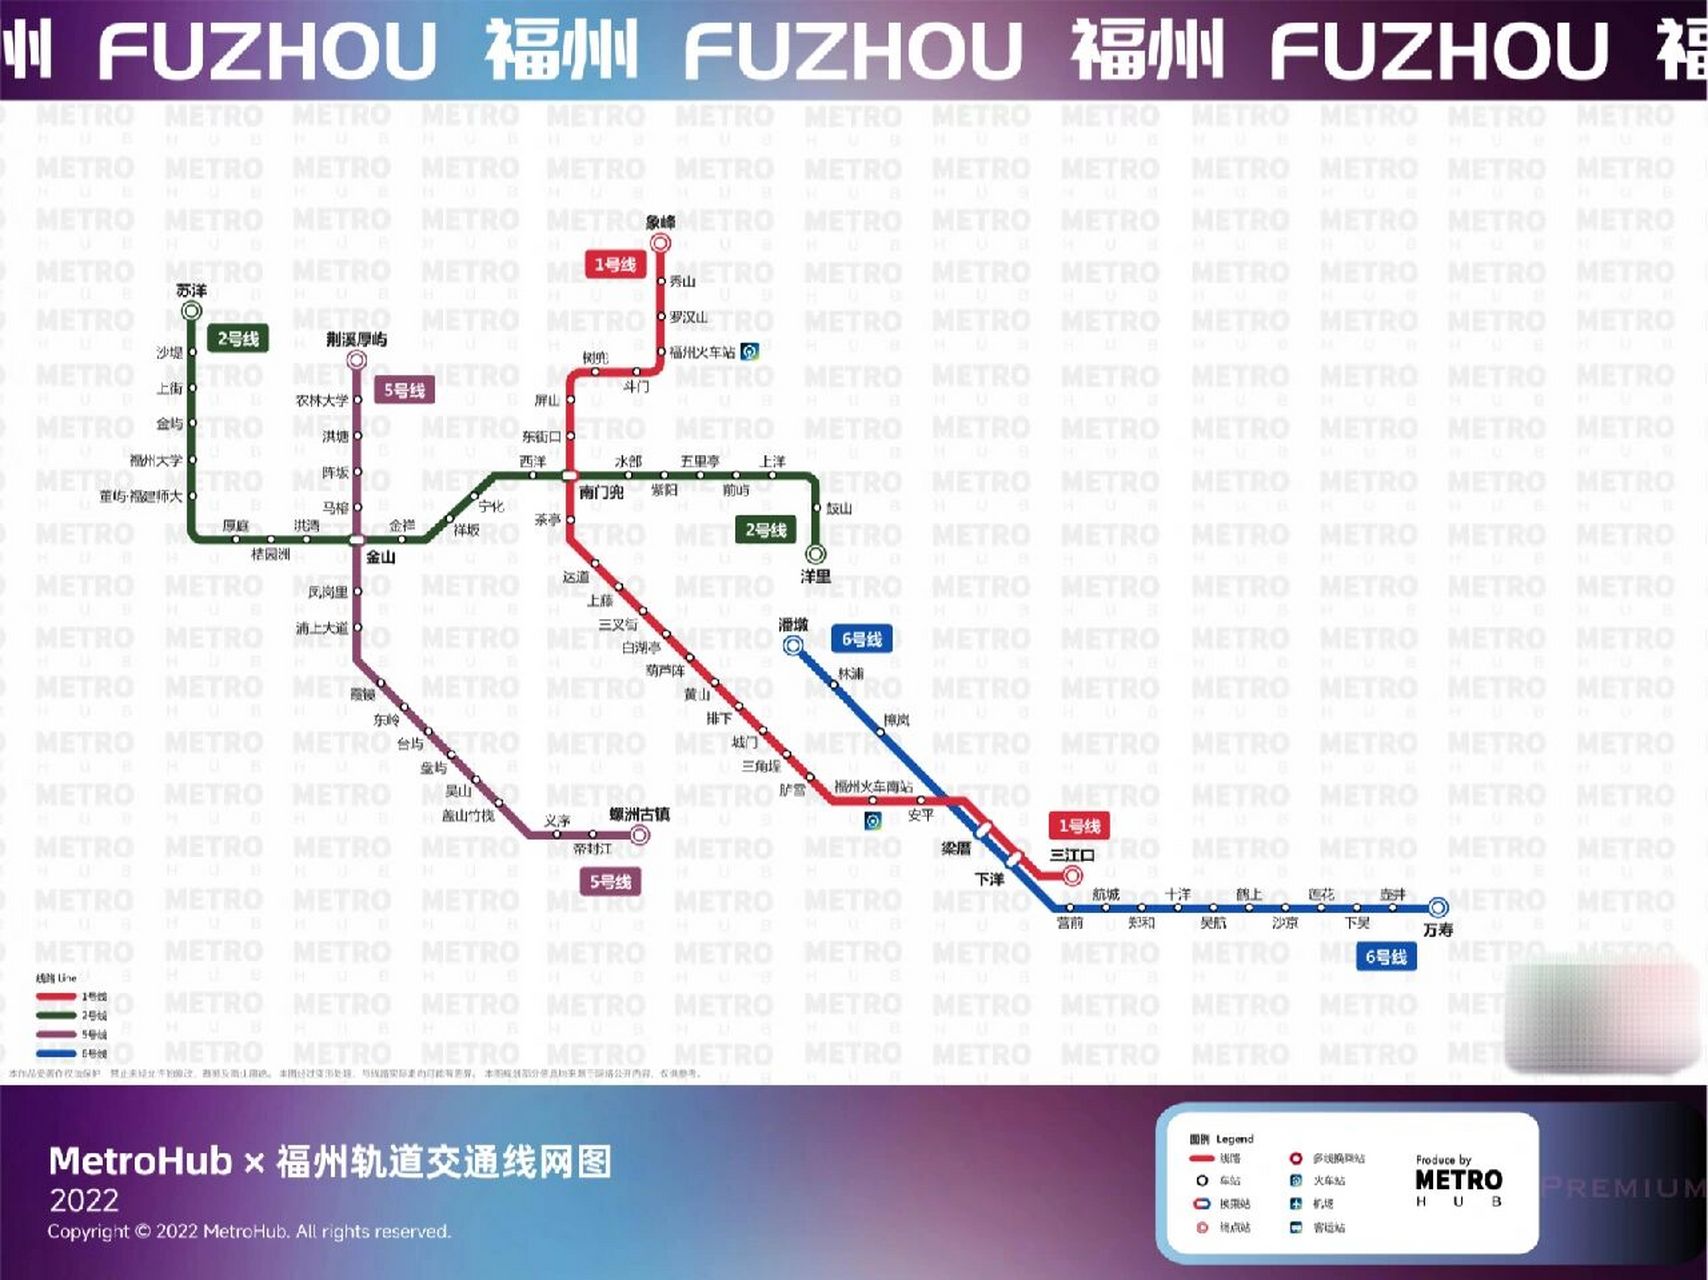 福州地铁2022,2023,2026 线网图 今天上午9点, 正式开通运营,成为 第